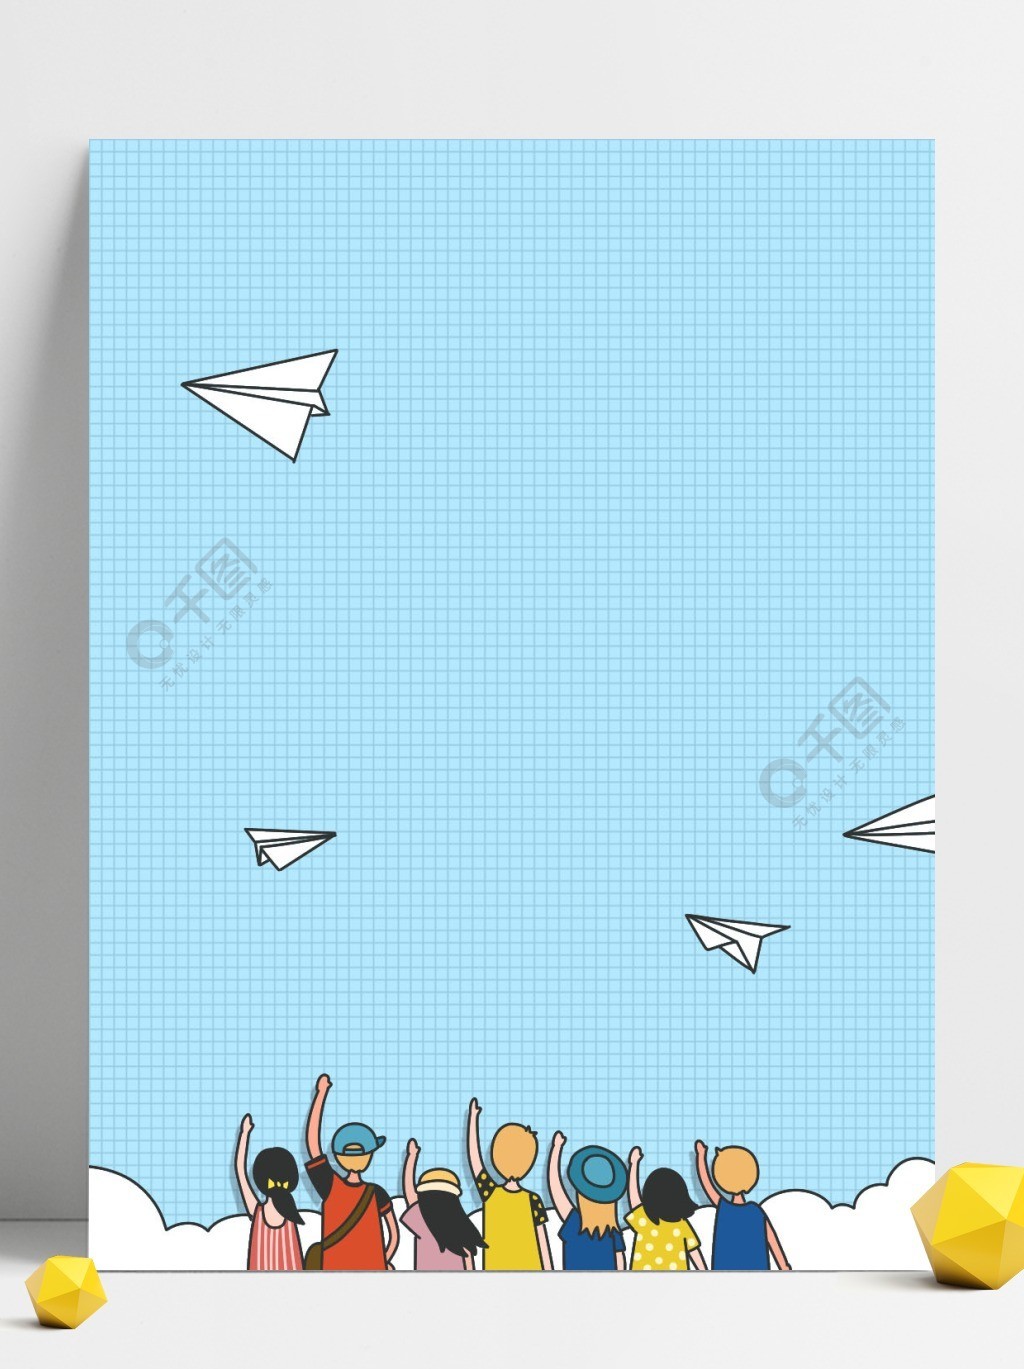 大气卡通毕业季放纸飞机背景设计2年前发布